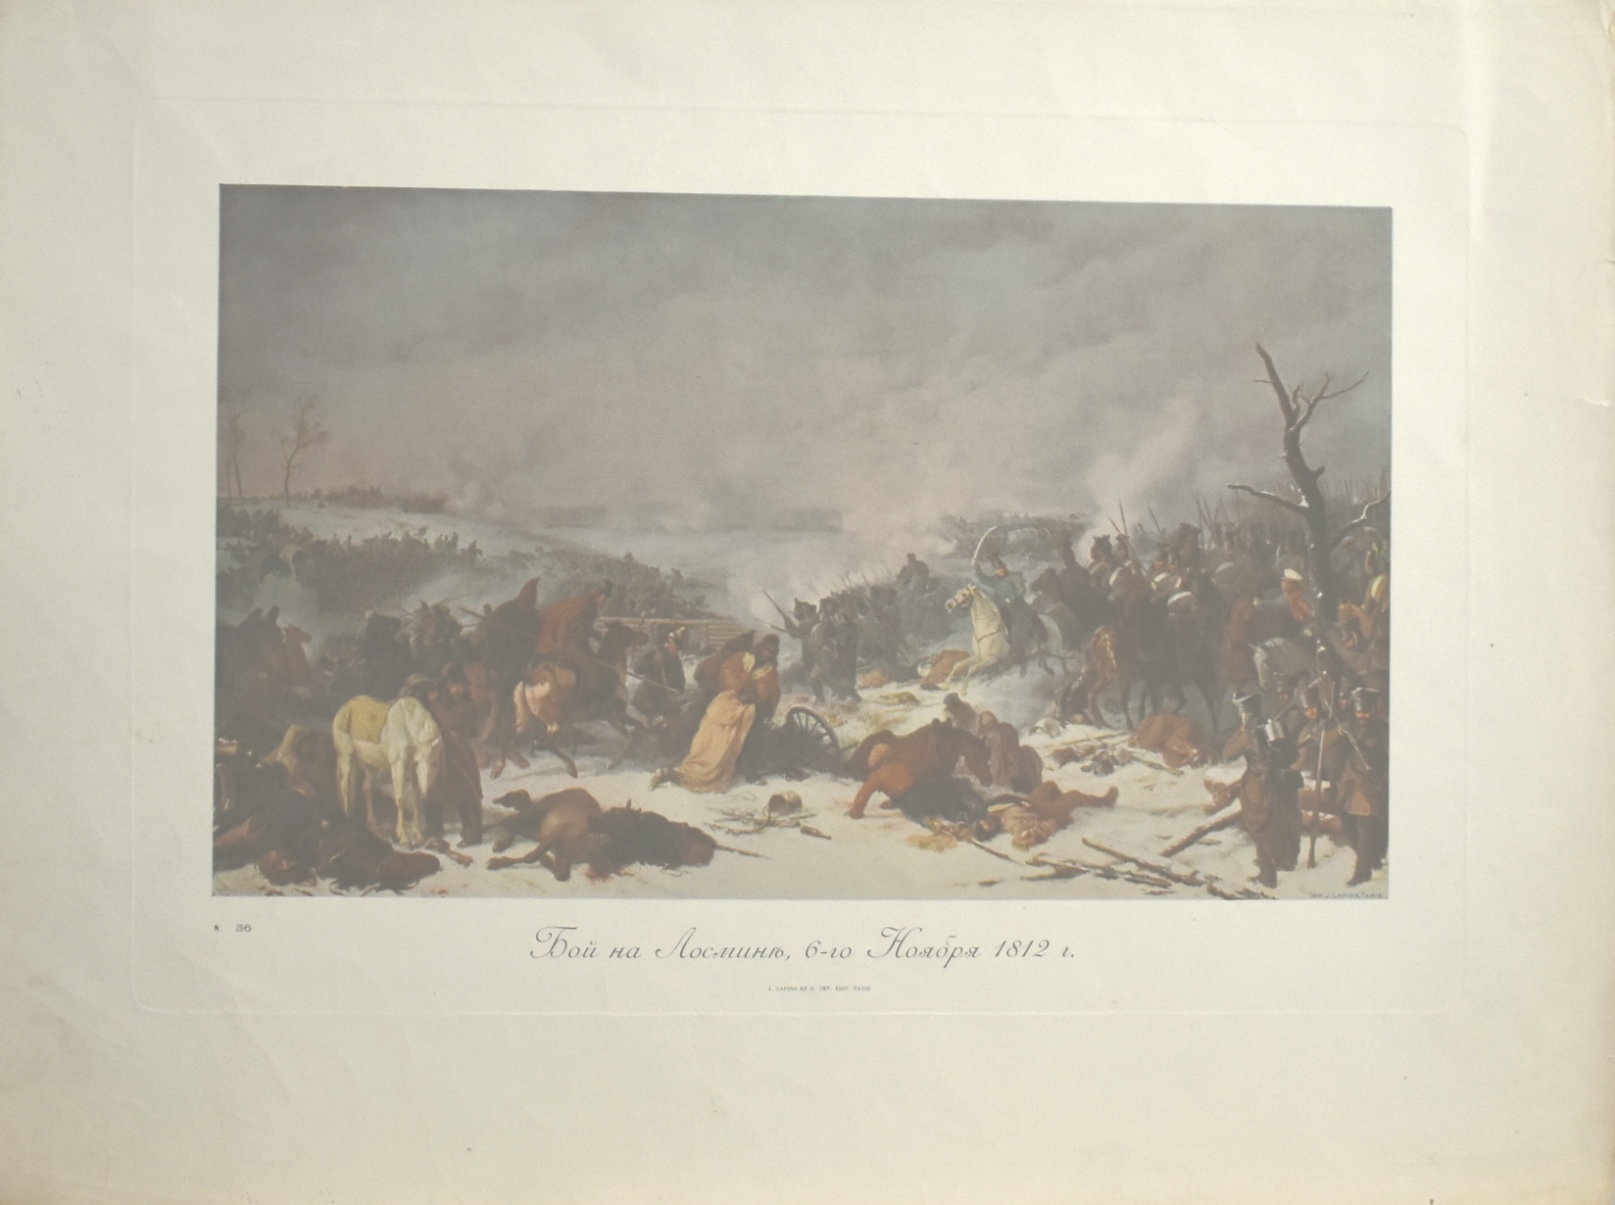 Репродукція Автор невідомий "Бой на Лосминъ, 6-го Ноября 1812 г." Книга "Отечественная война 1812"